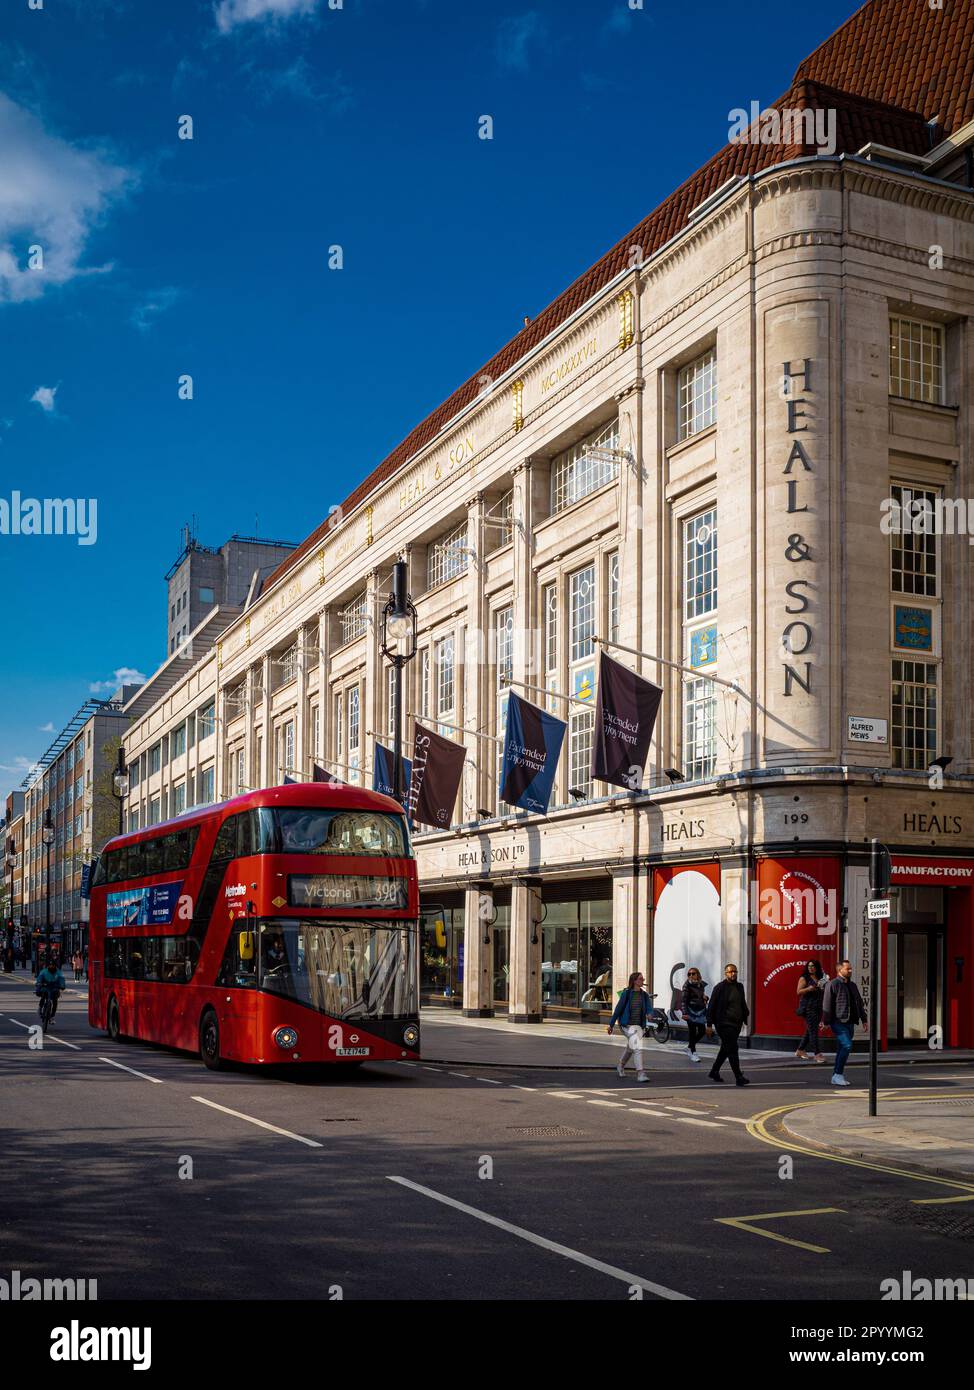 Heals London Store en Tottenham Court Road London. Las banderas ondean fuera de la tienda de muebles y diseño de Heals. Fundada en 1810 por John Harris Heal & Son. Foto de stock